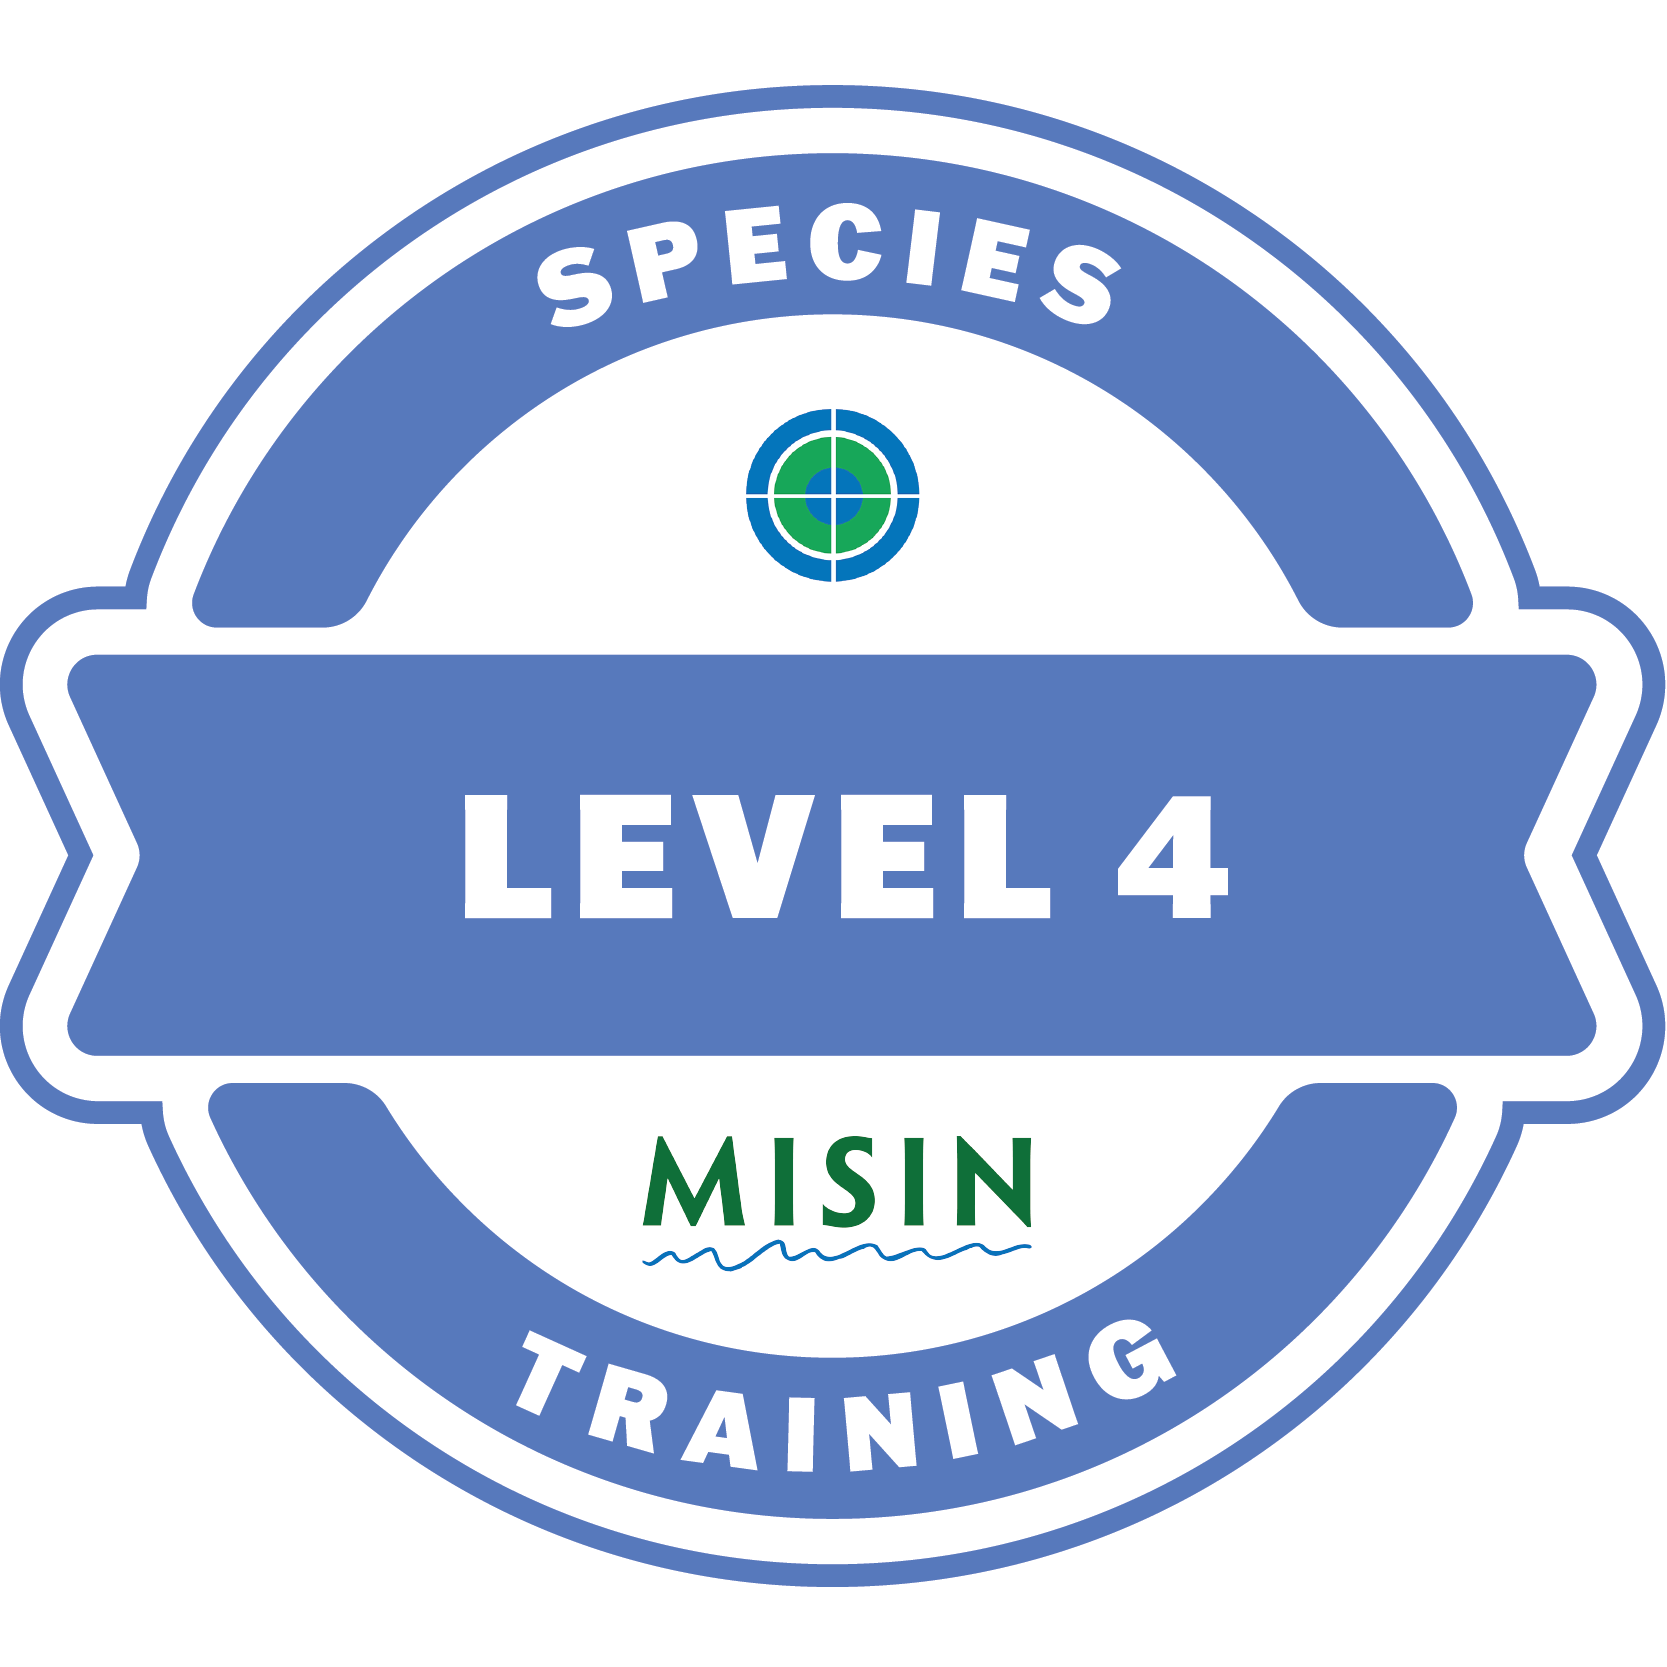 Species Training Level 4